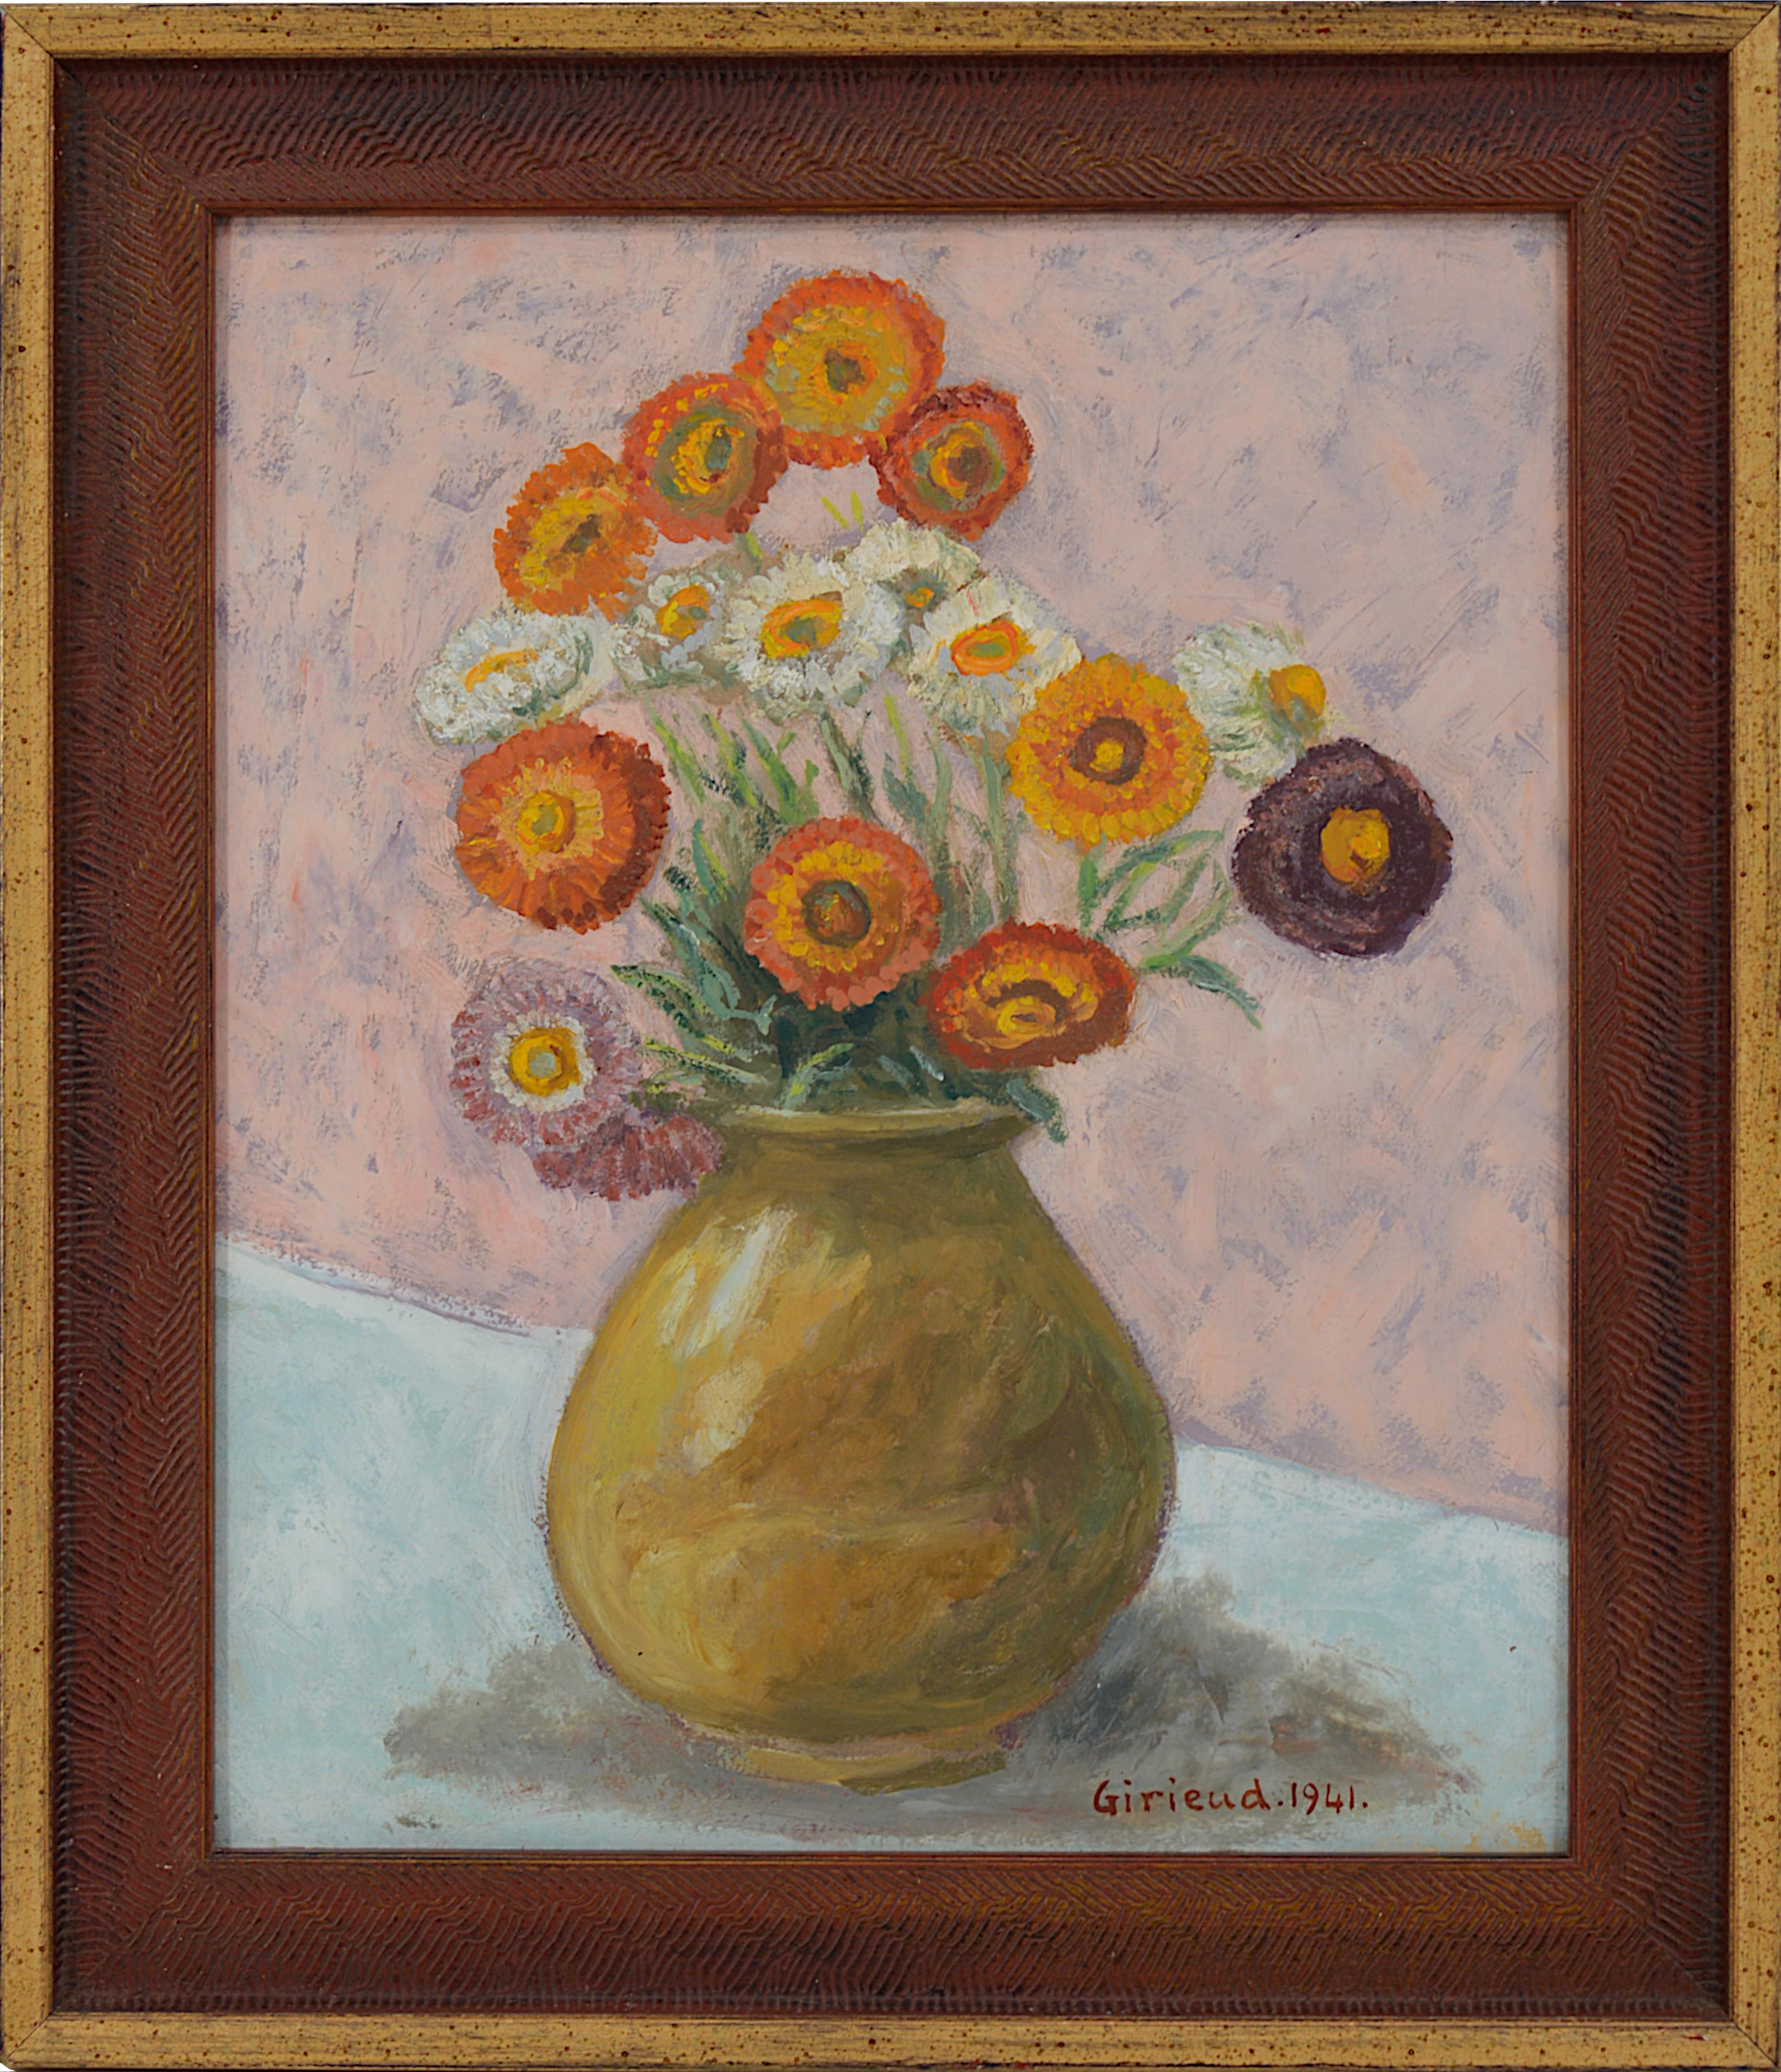 Pierre GIRIEUD, Vase de Fleurs, Ornements Marigolds, Huile sur Carton, 1941